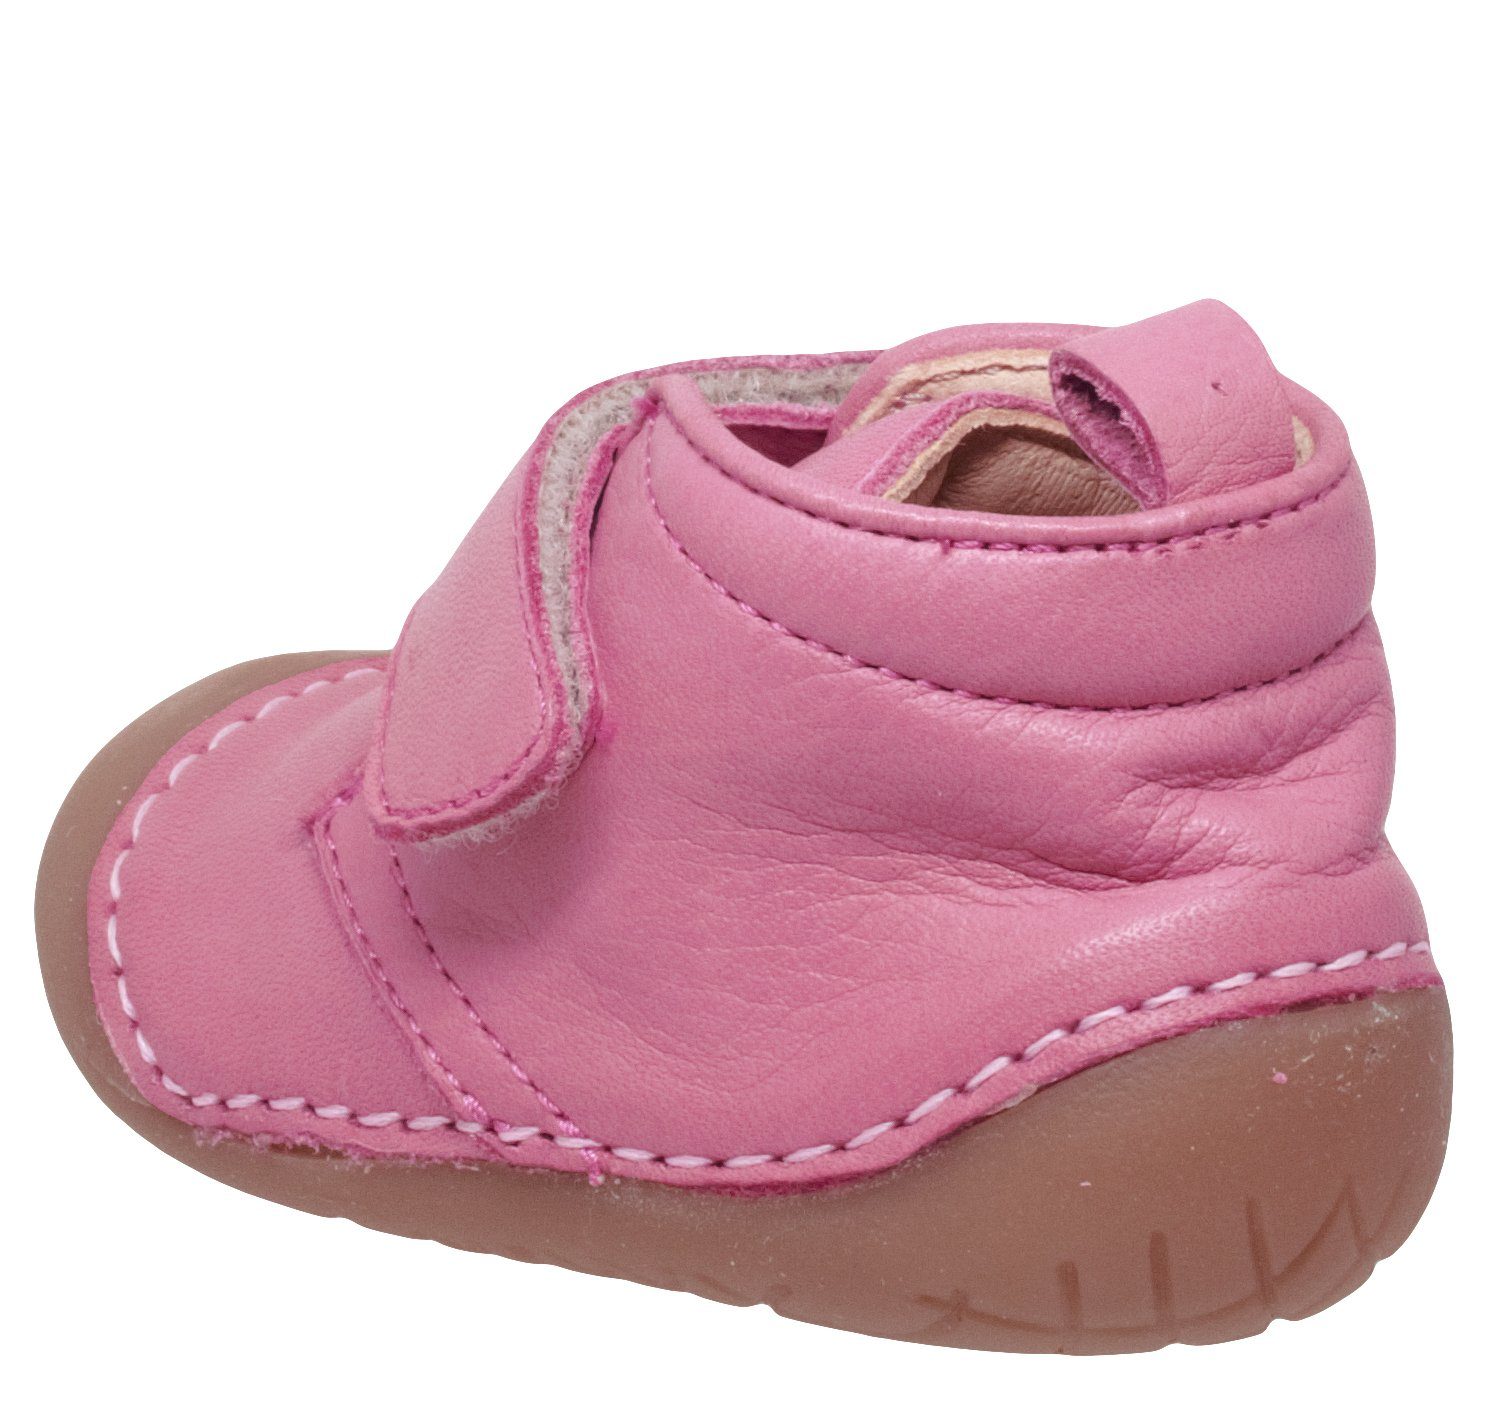 Ocra Ocra 331 Baby Krabbelschuh Pink Leder Klett Lauflernschuhe Mädchen